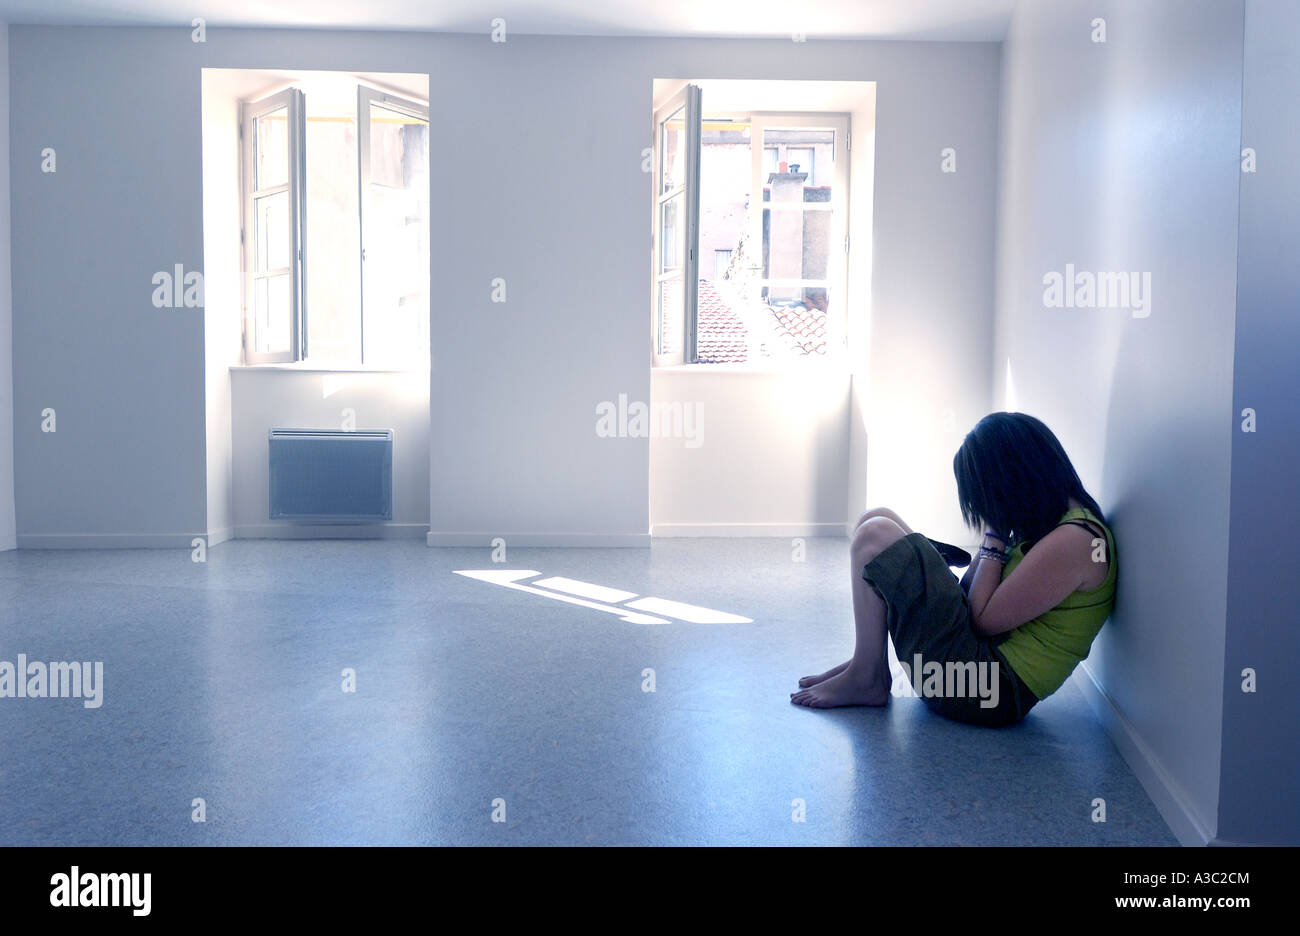 Mädchen/Jugendlichen/junge Frau - Einsamkeit, Depression, psychische Gesundheit Konzept Stockfoto